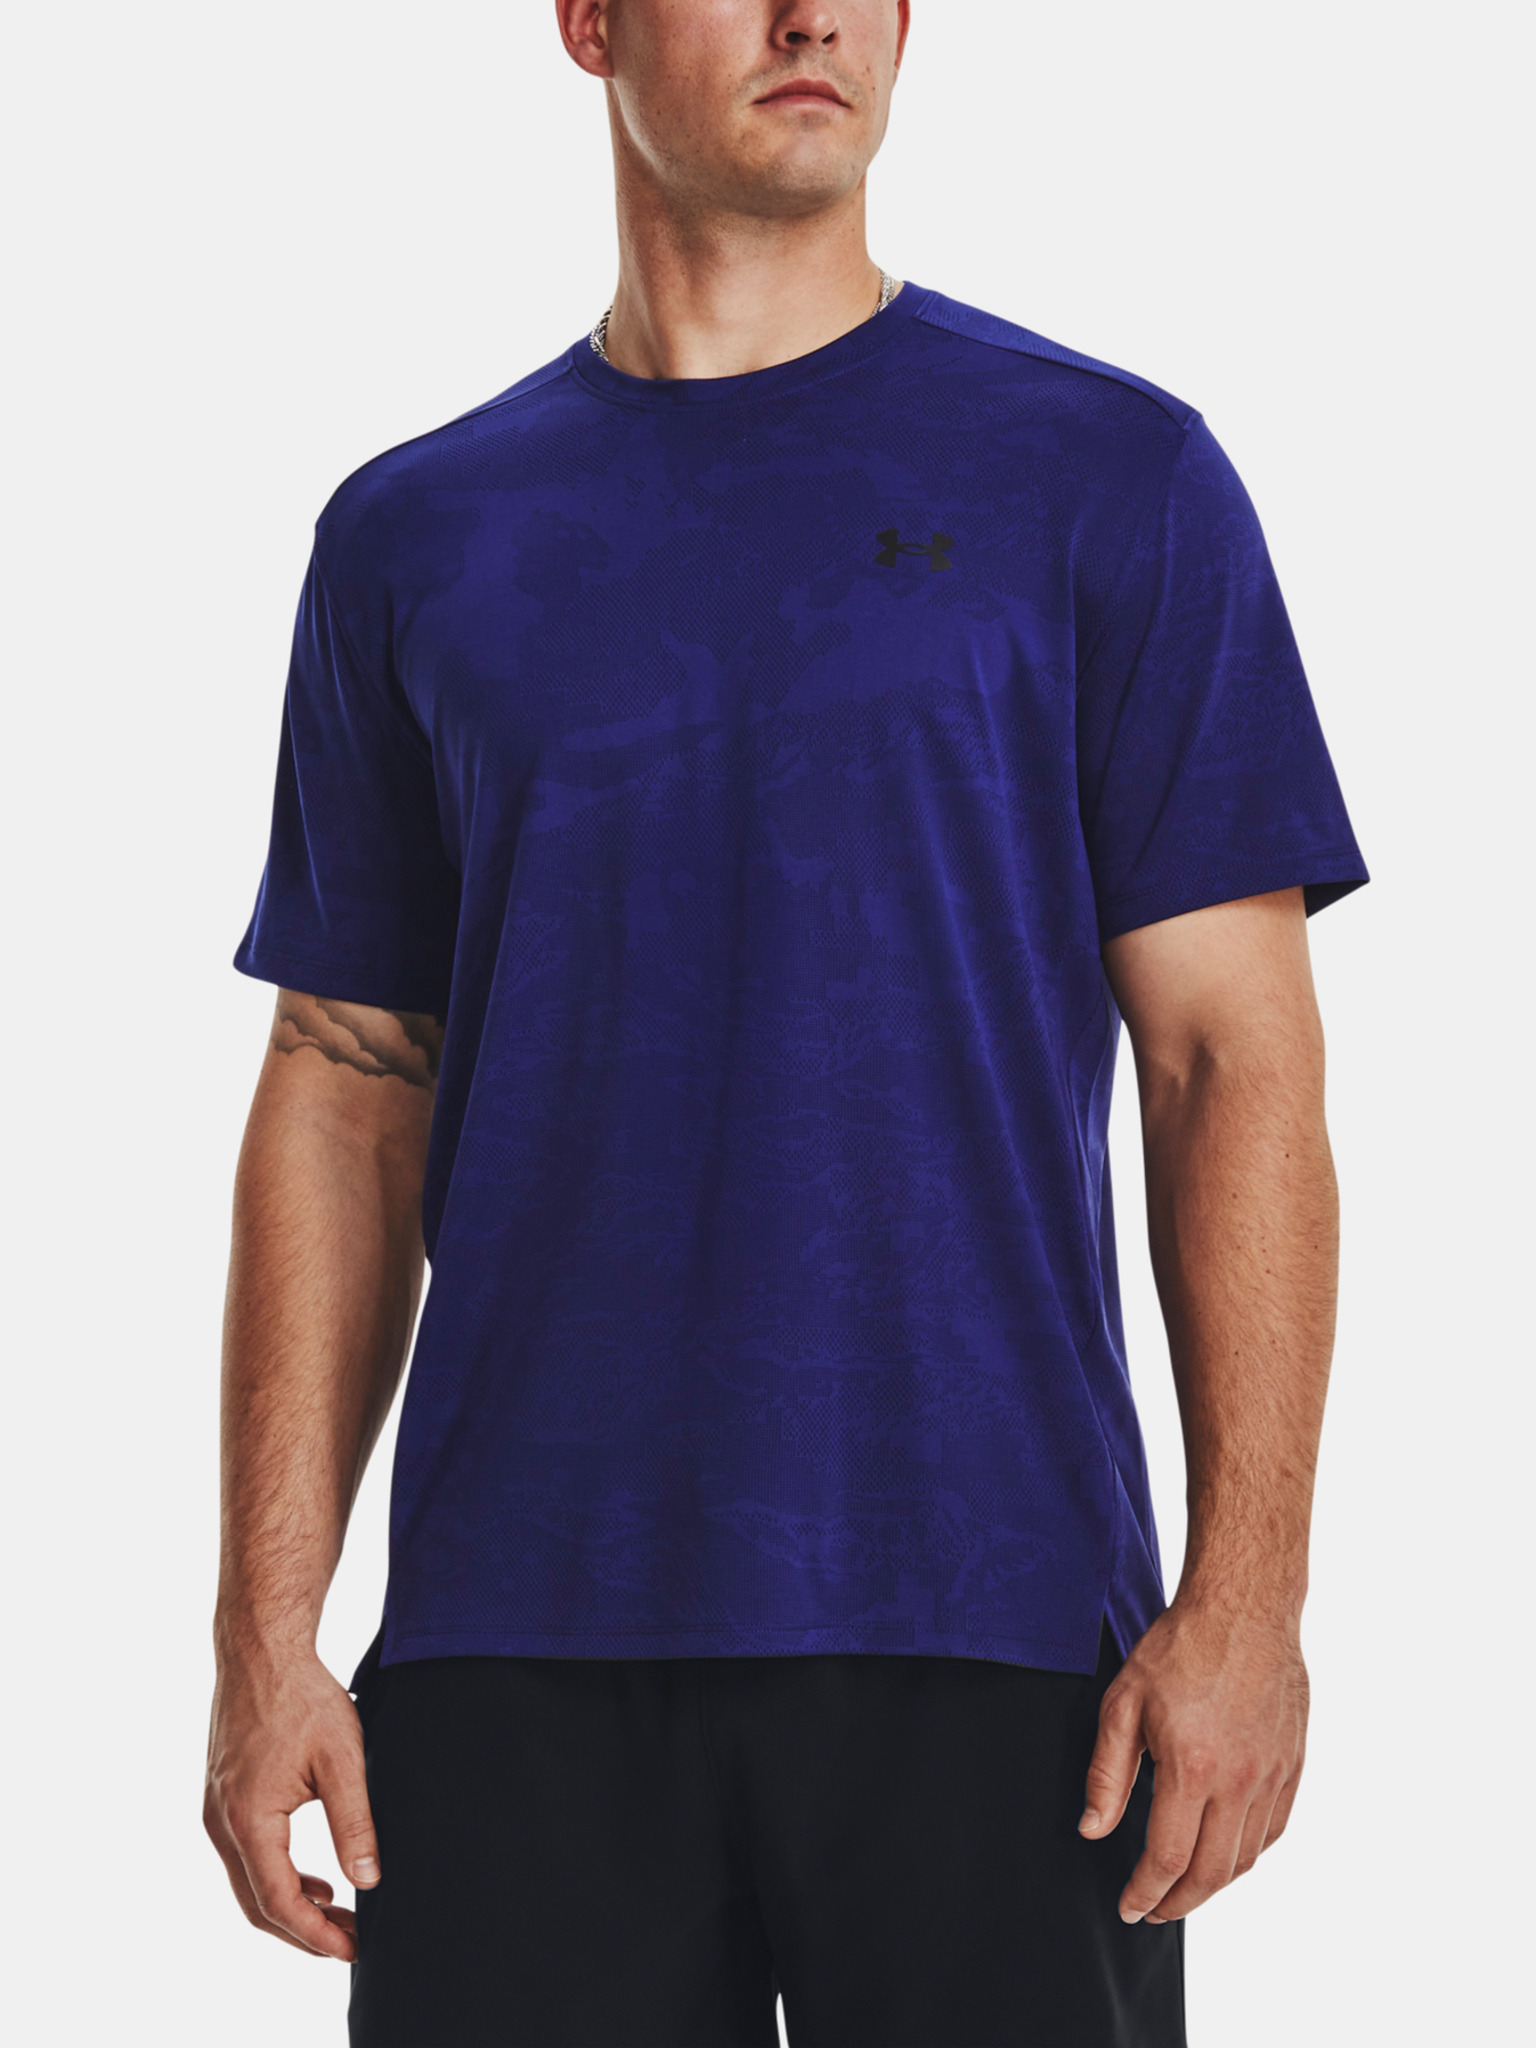 Under Armour - T-shirt de sport sans coutures - Bleu marine